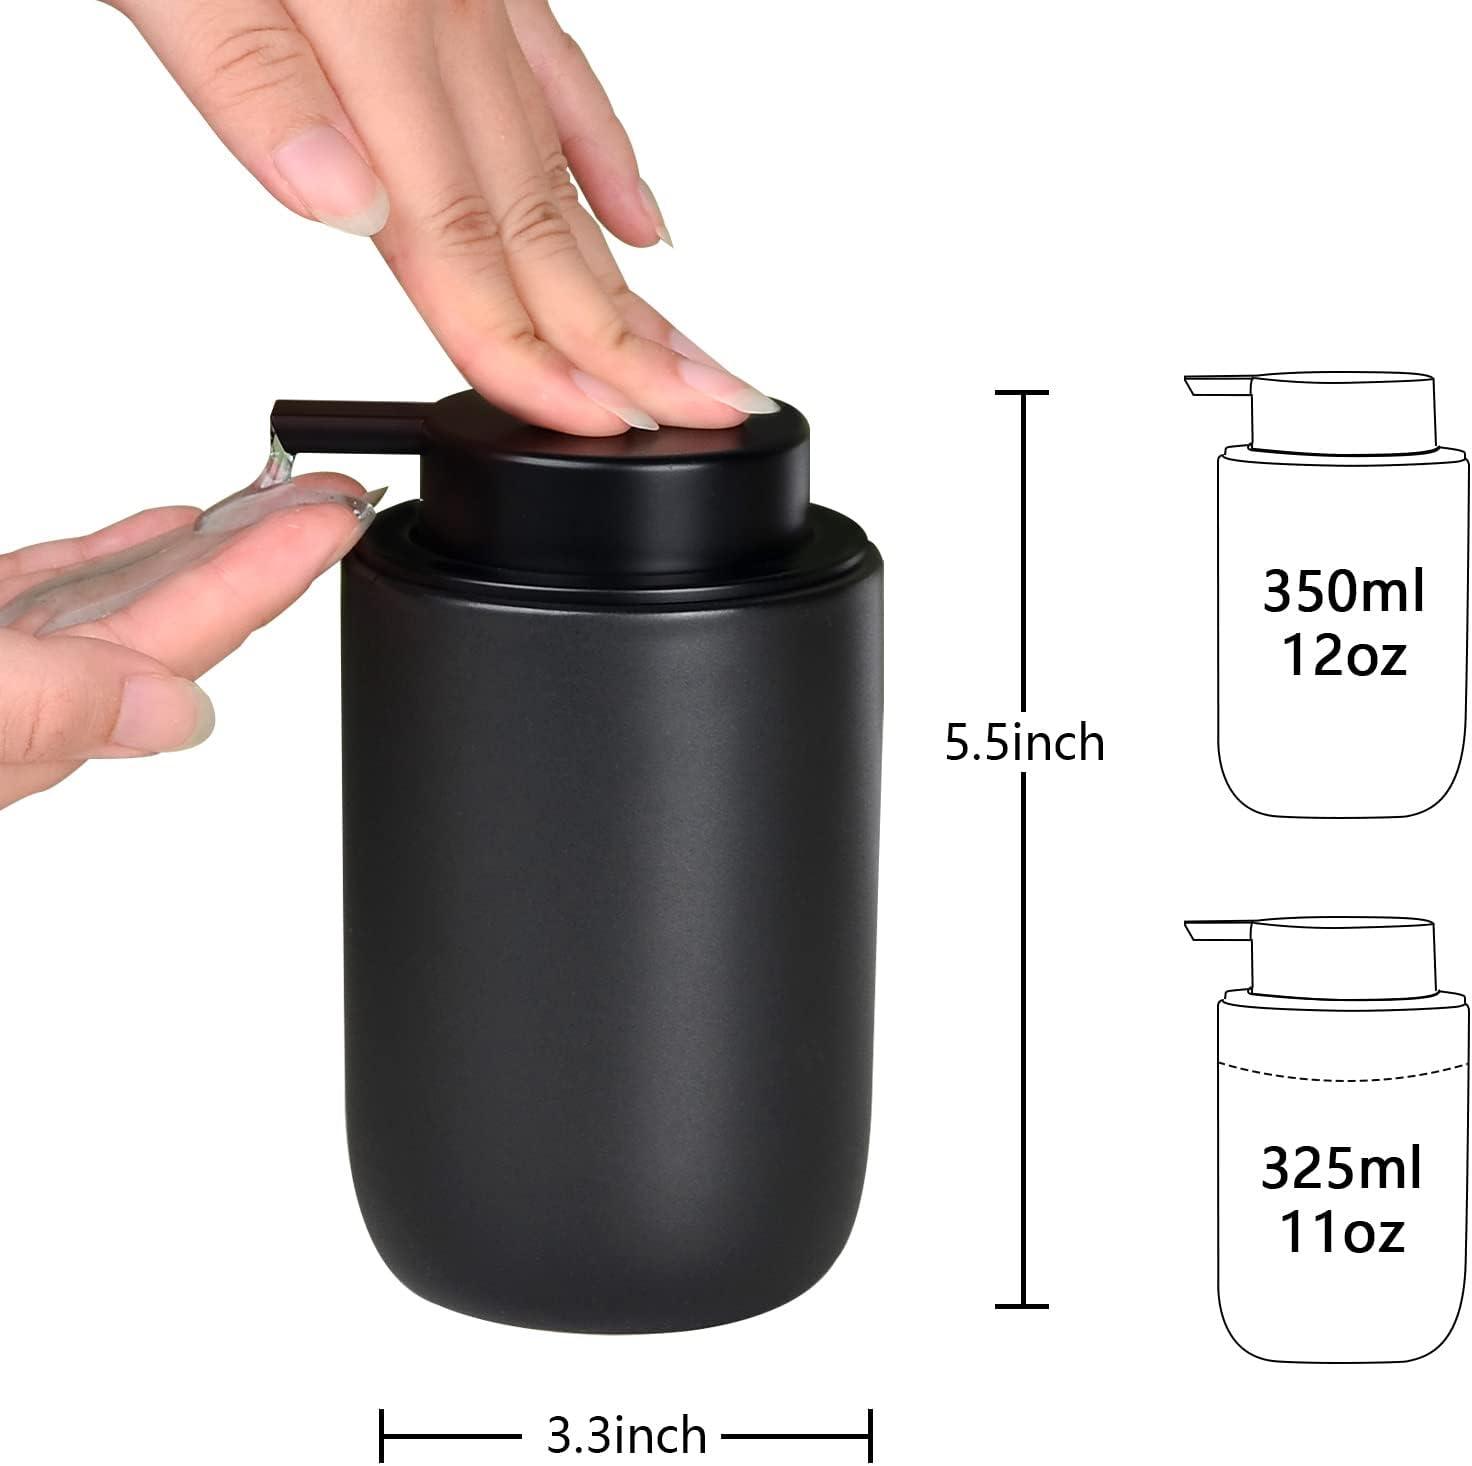 Dispensador de Jabón Versa Negro Estropajo Cerámica (16,5 x 16 x 10,5 cm)